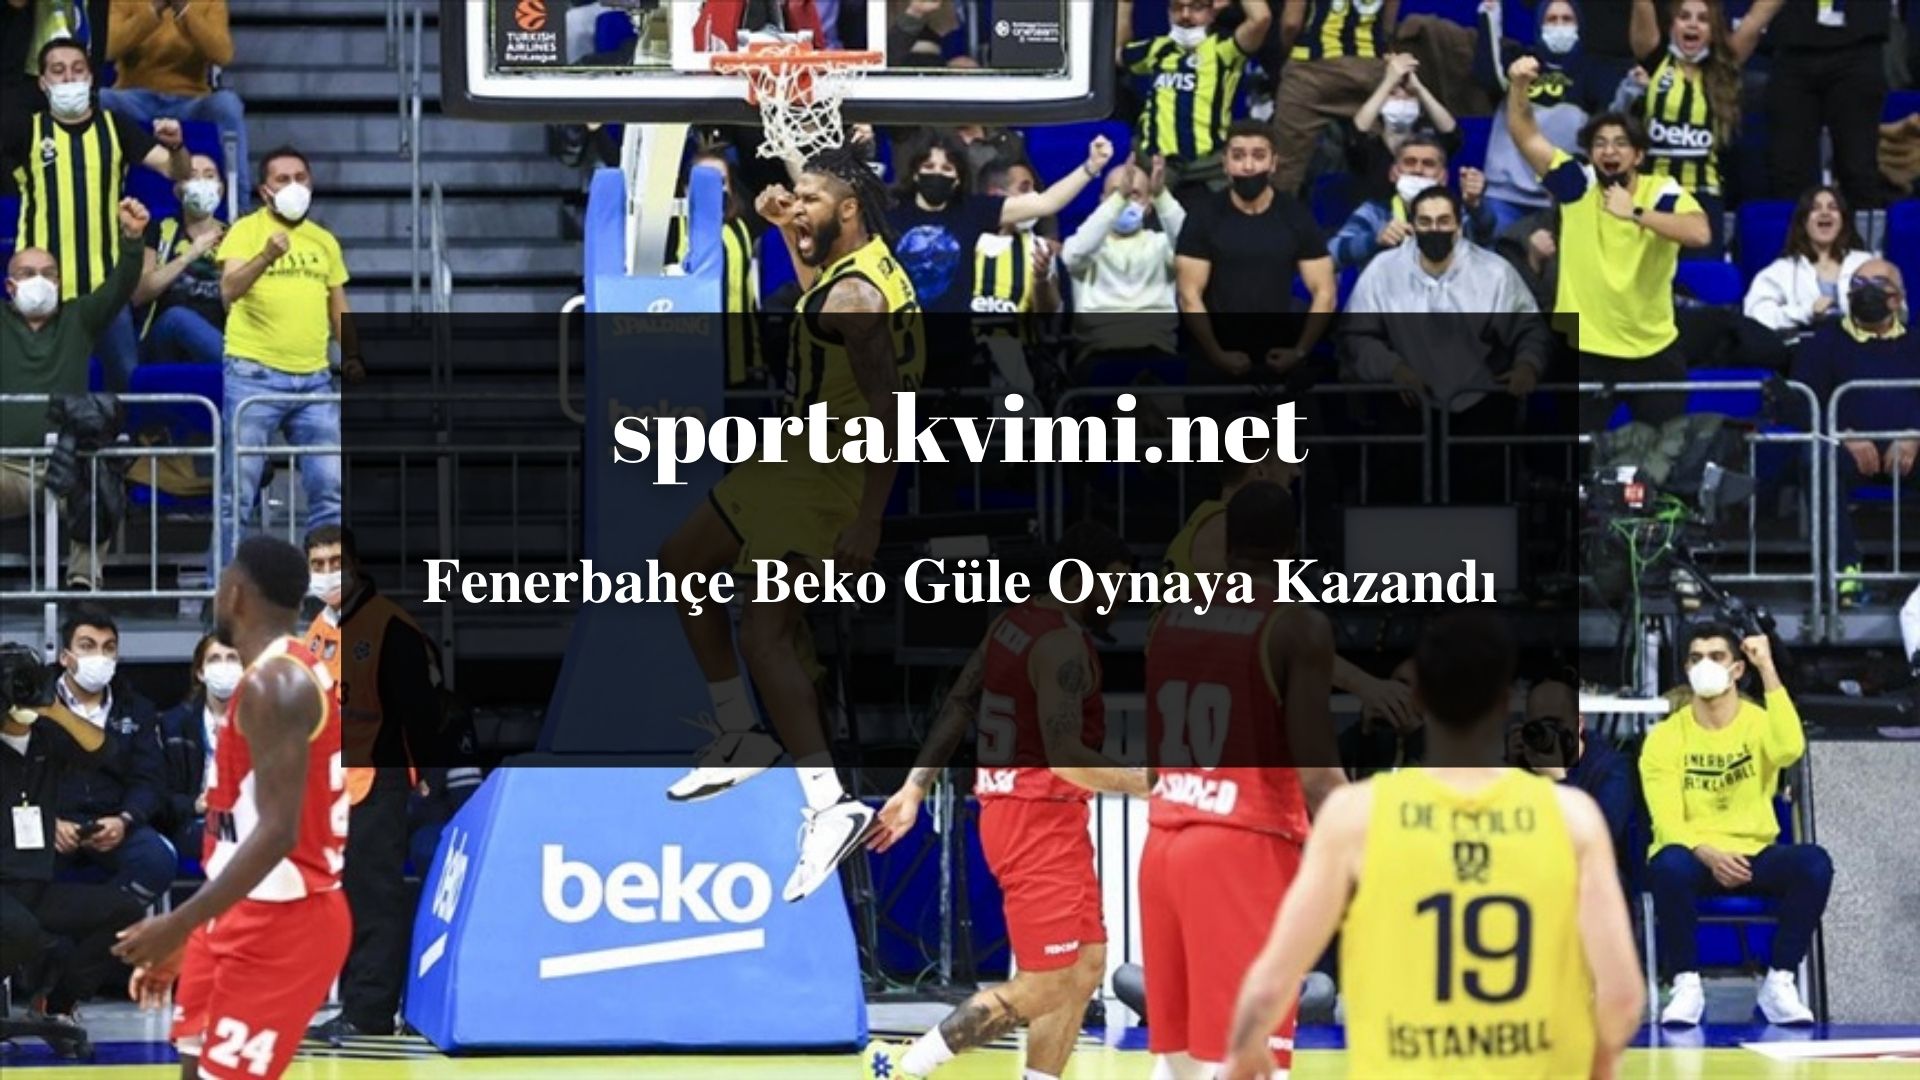 Fenerbahçe Beko Güle Oynaya Kazandı